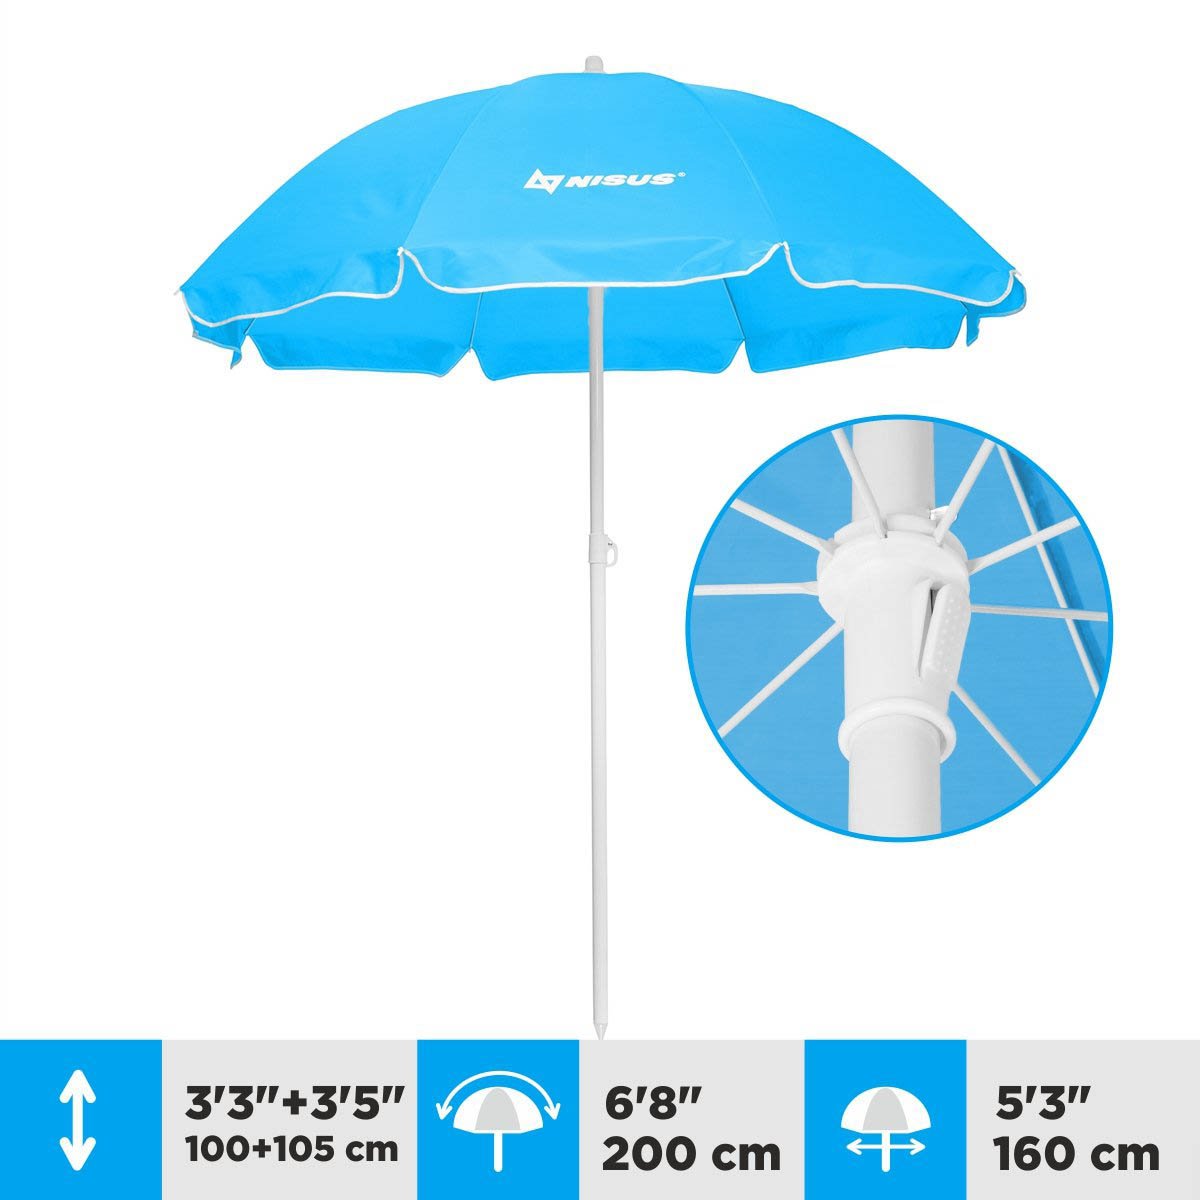 A 5.3 ft Sky Blue Tilting Beach Umbrella is 6.6 feet high